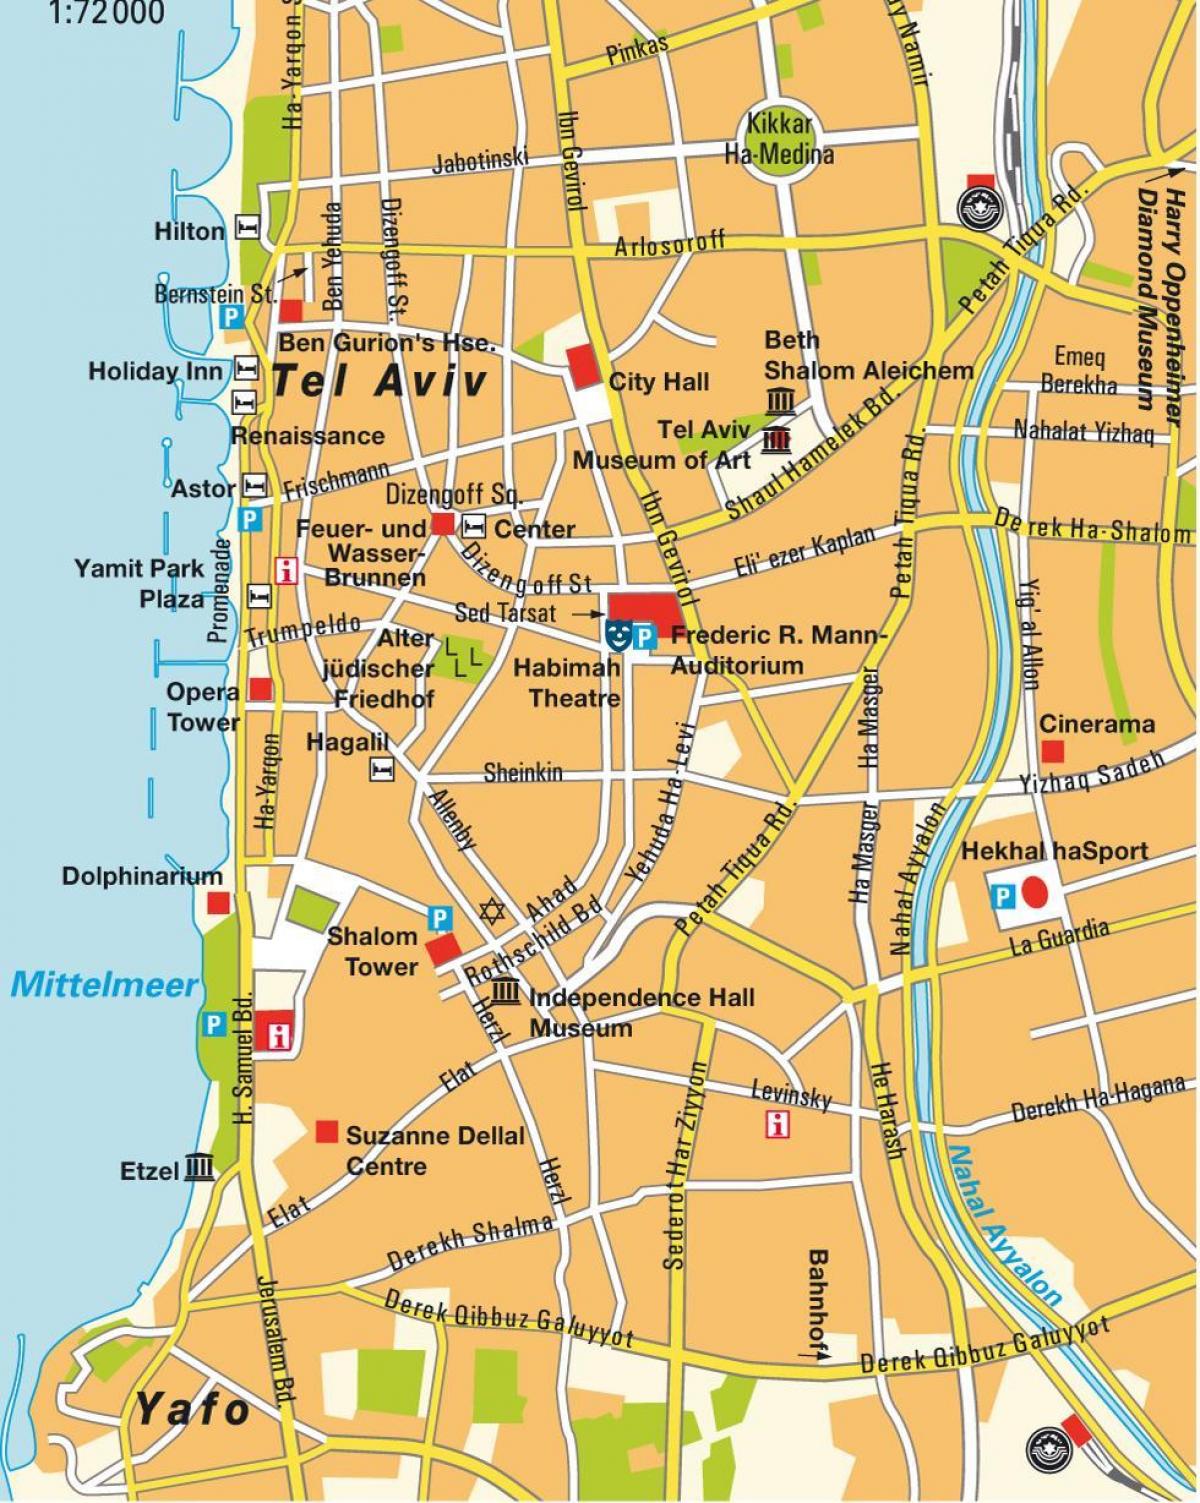 kort over Tel Aviv-området